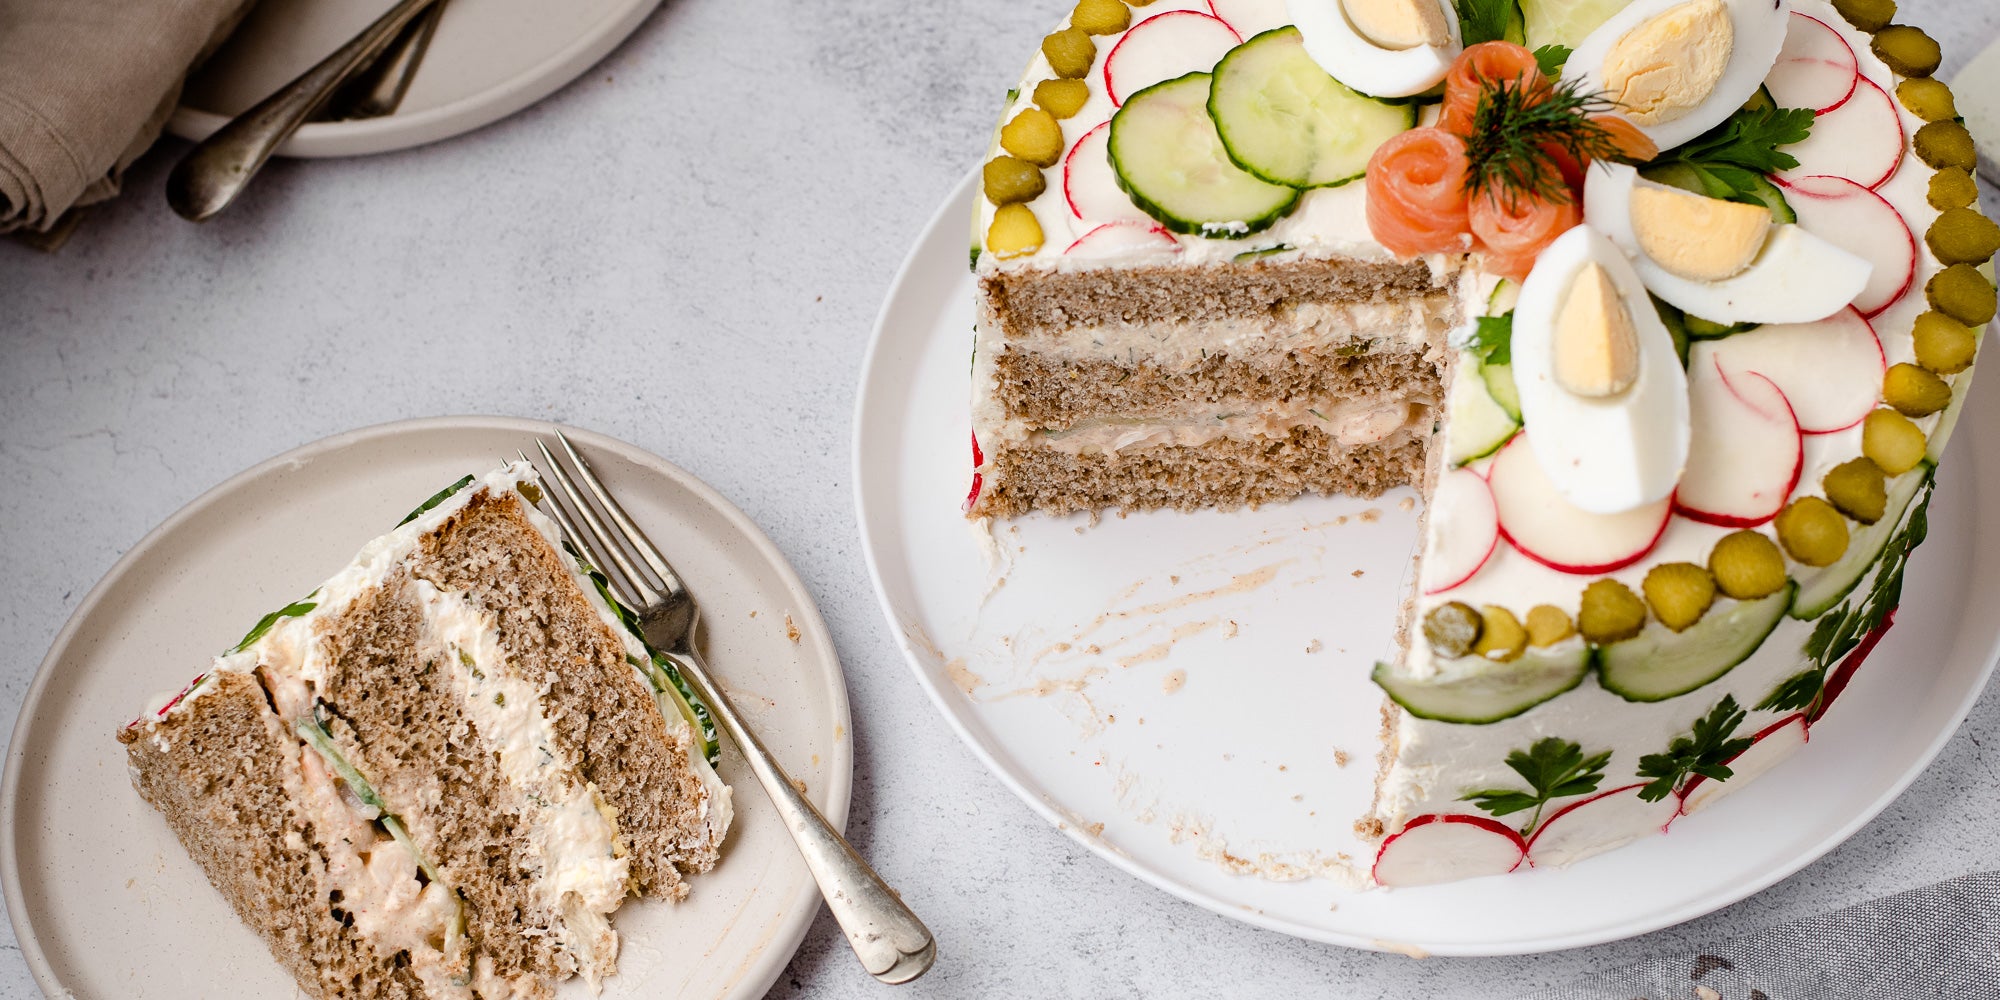 Smörgåstårta Sandwich Cake on a white plate with a slice cut out of it